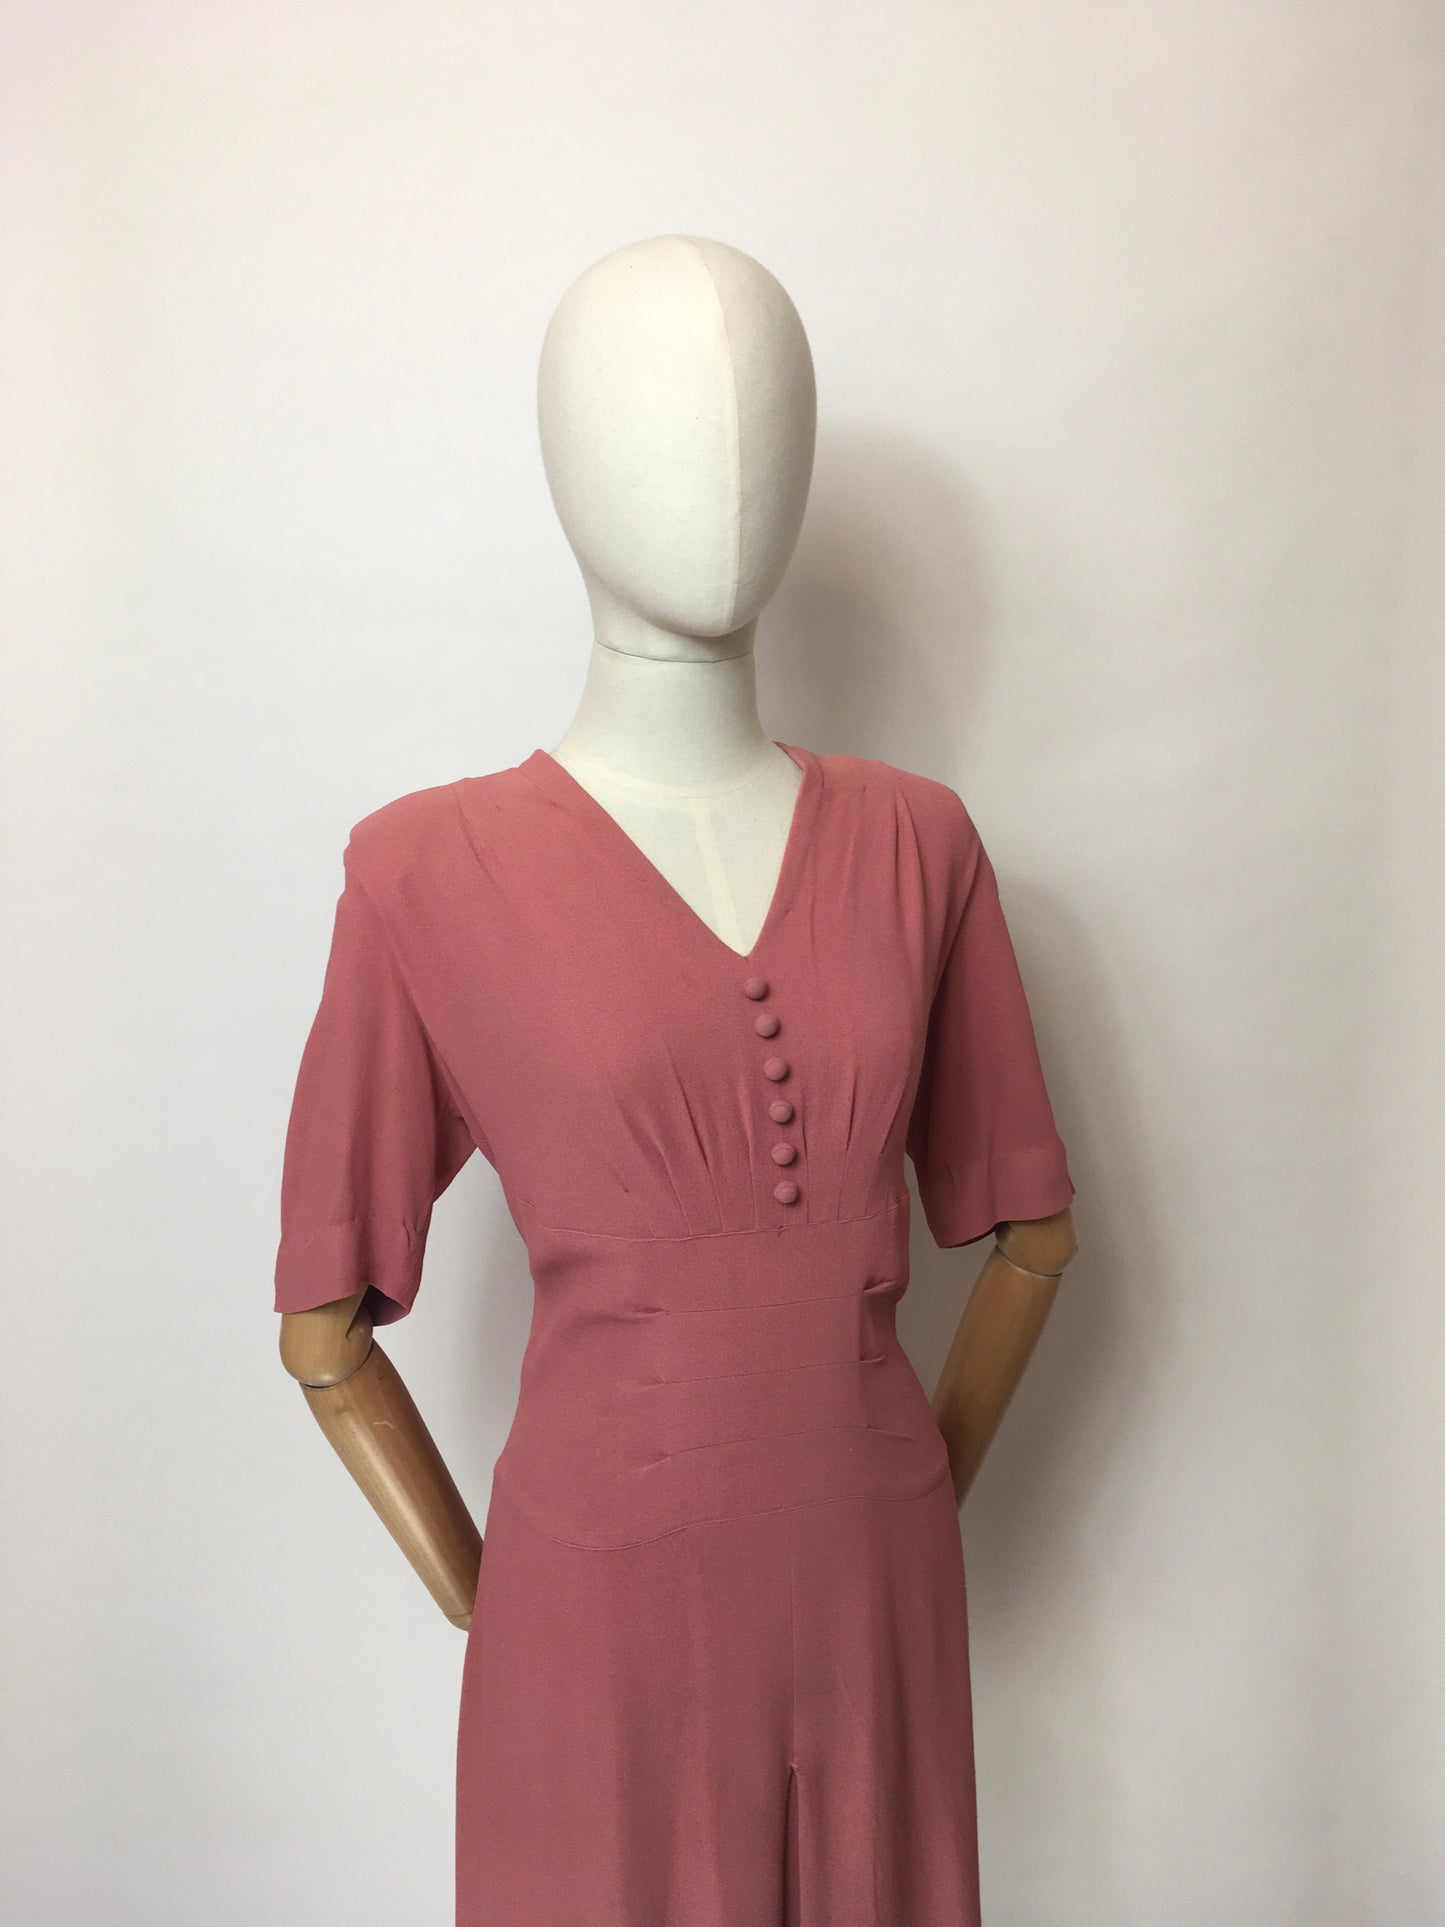 Original 1940’s Rose Pink Crepe Dress - Lovely Panelled Waist Detailing